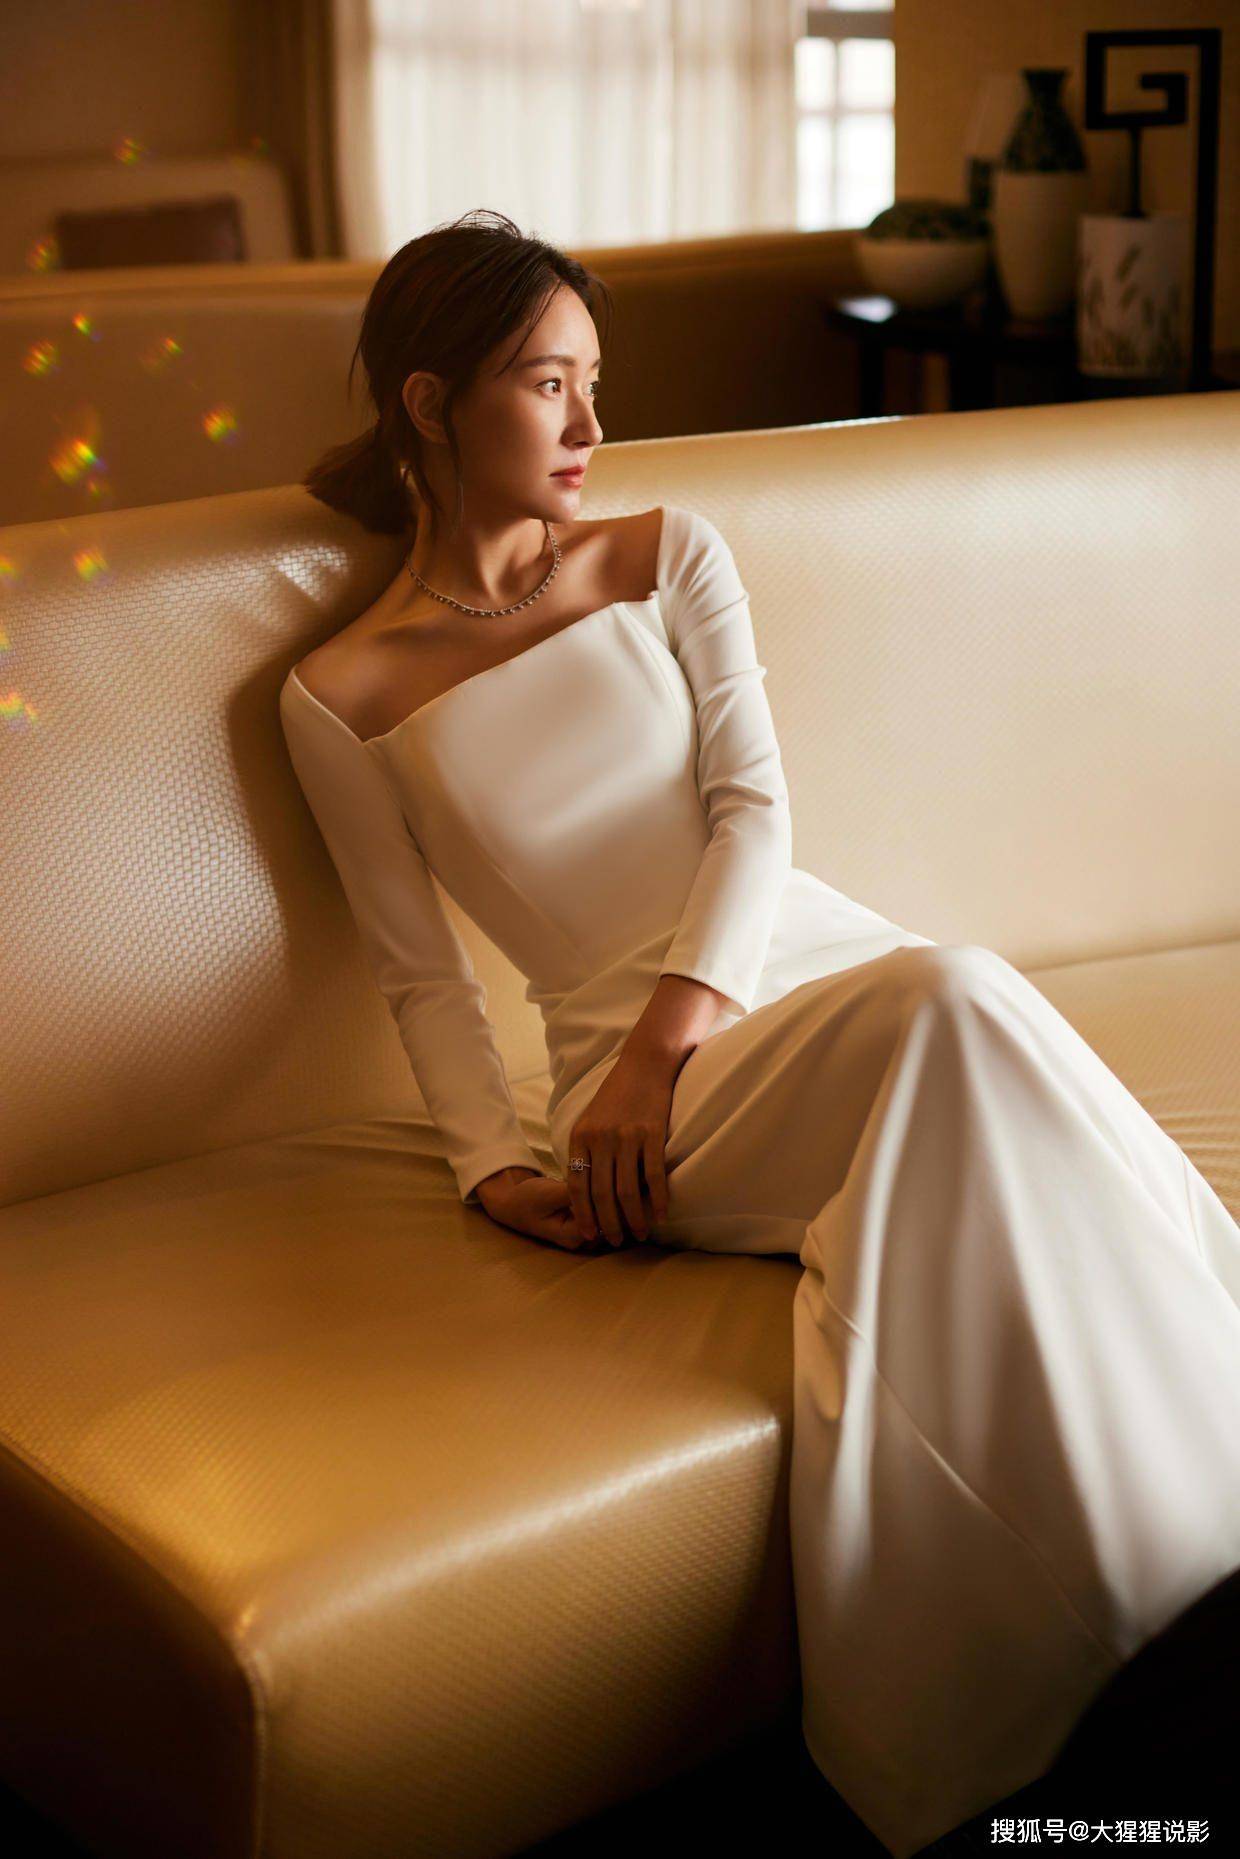 焦俊艳:一条白色长裙将她的魅力发挥到了极致!